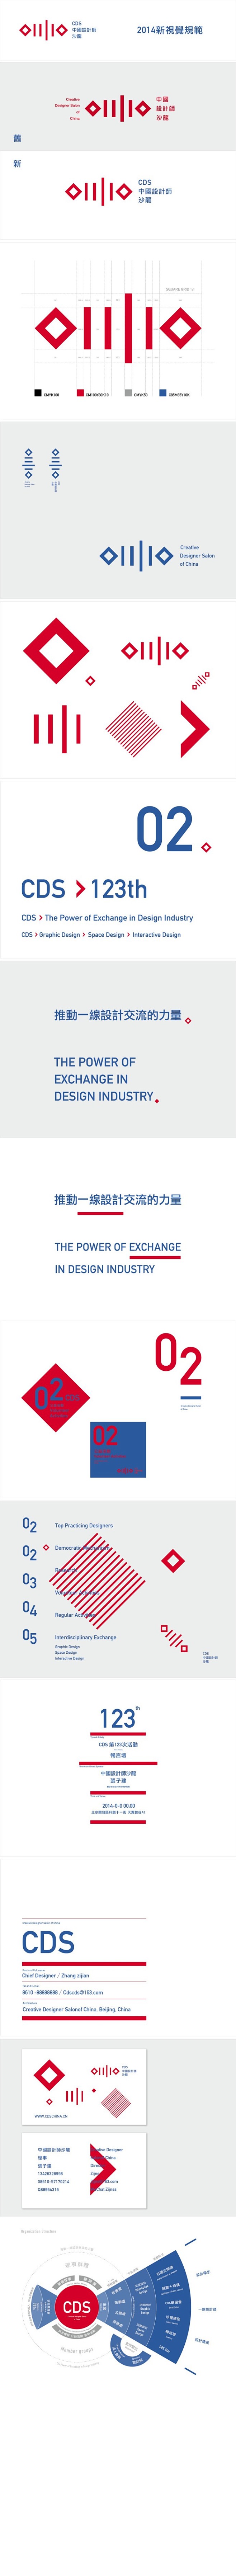 中国设计师沙龙的照片 - 微相册